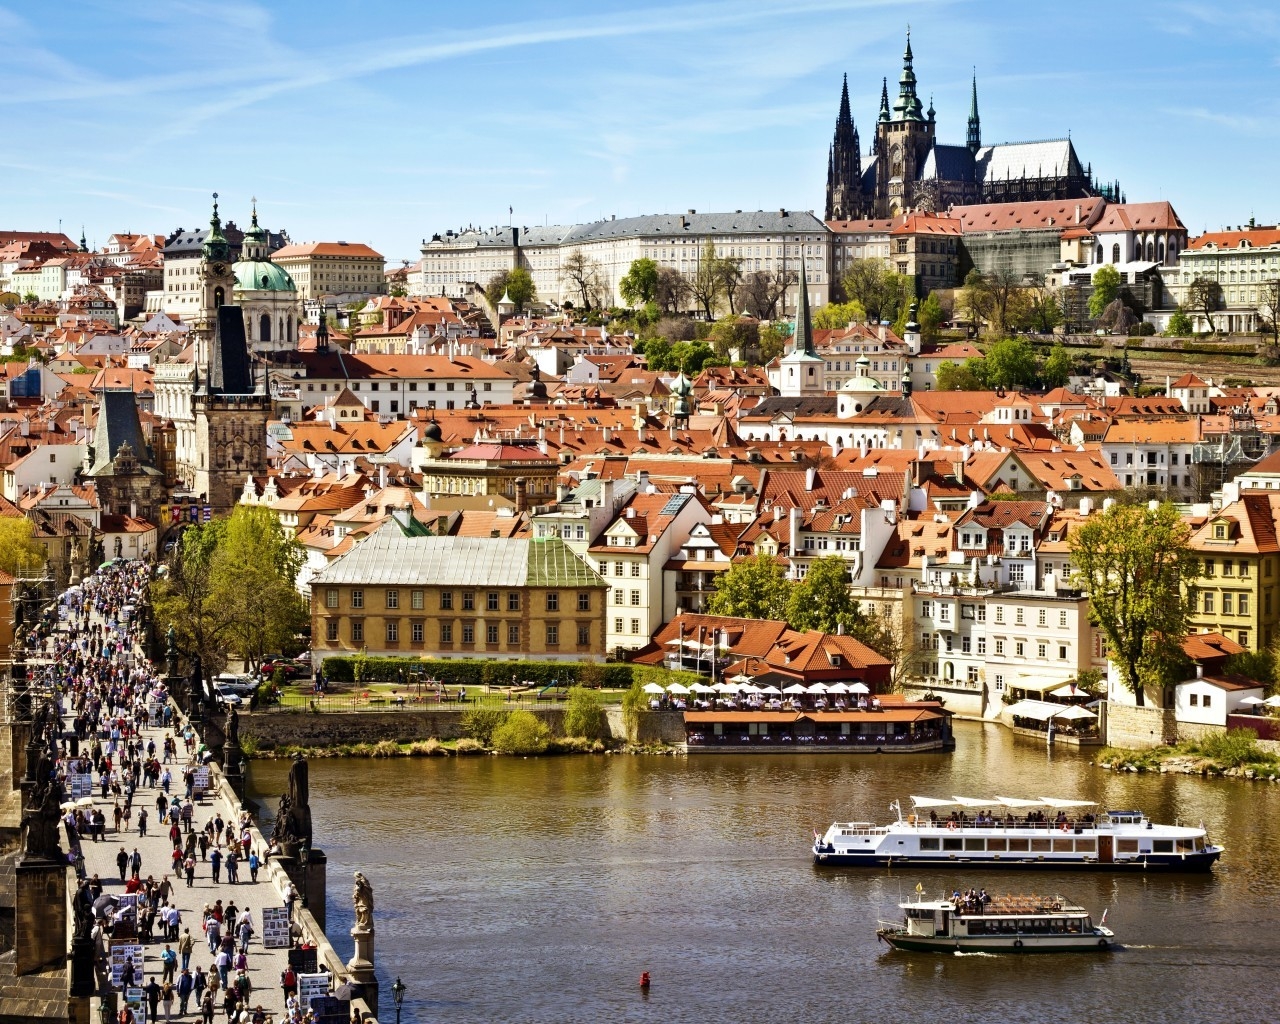 Prague City View for 1280 x 1024 resolution